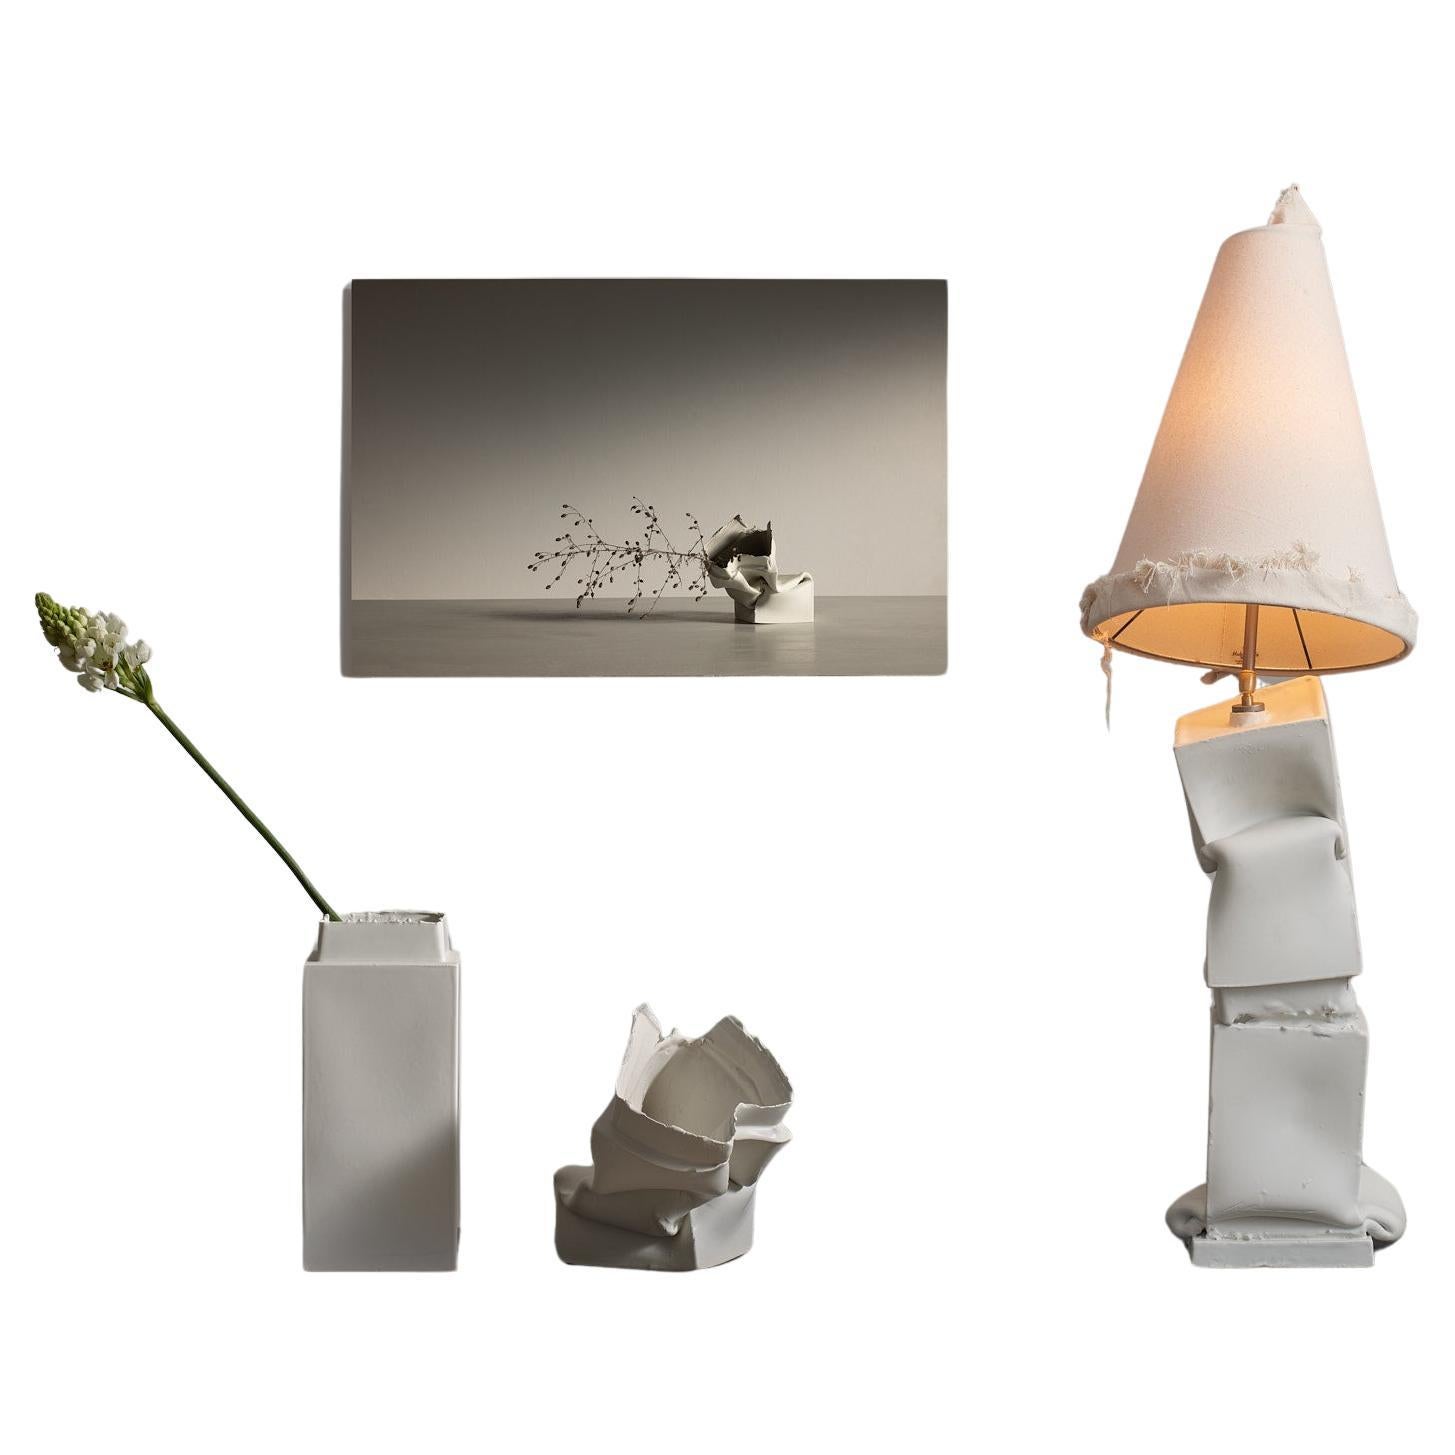 Break the Mold: Brenta+Brenta ceramic lamp by Jenna Basso Pietrobon